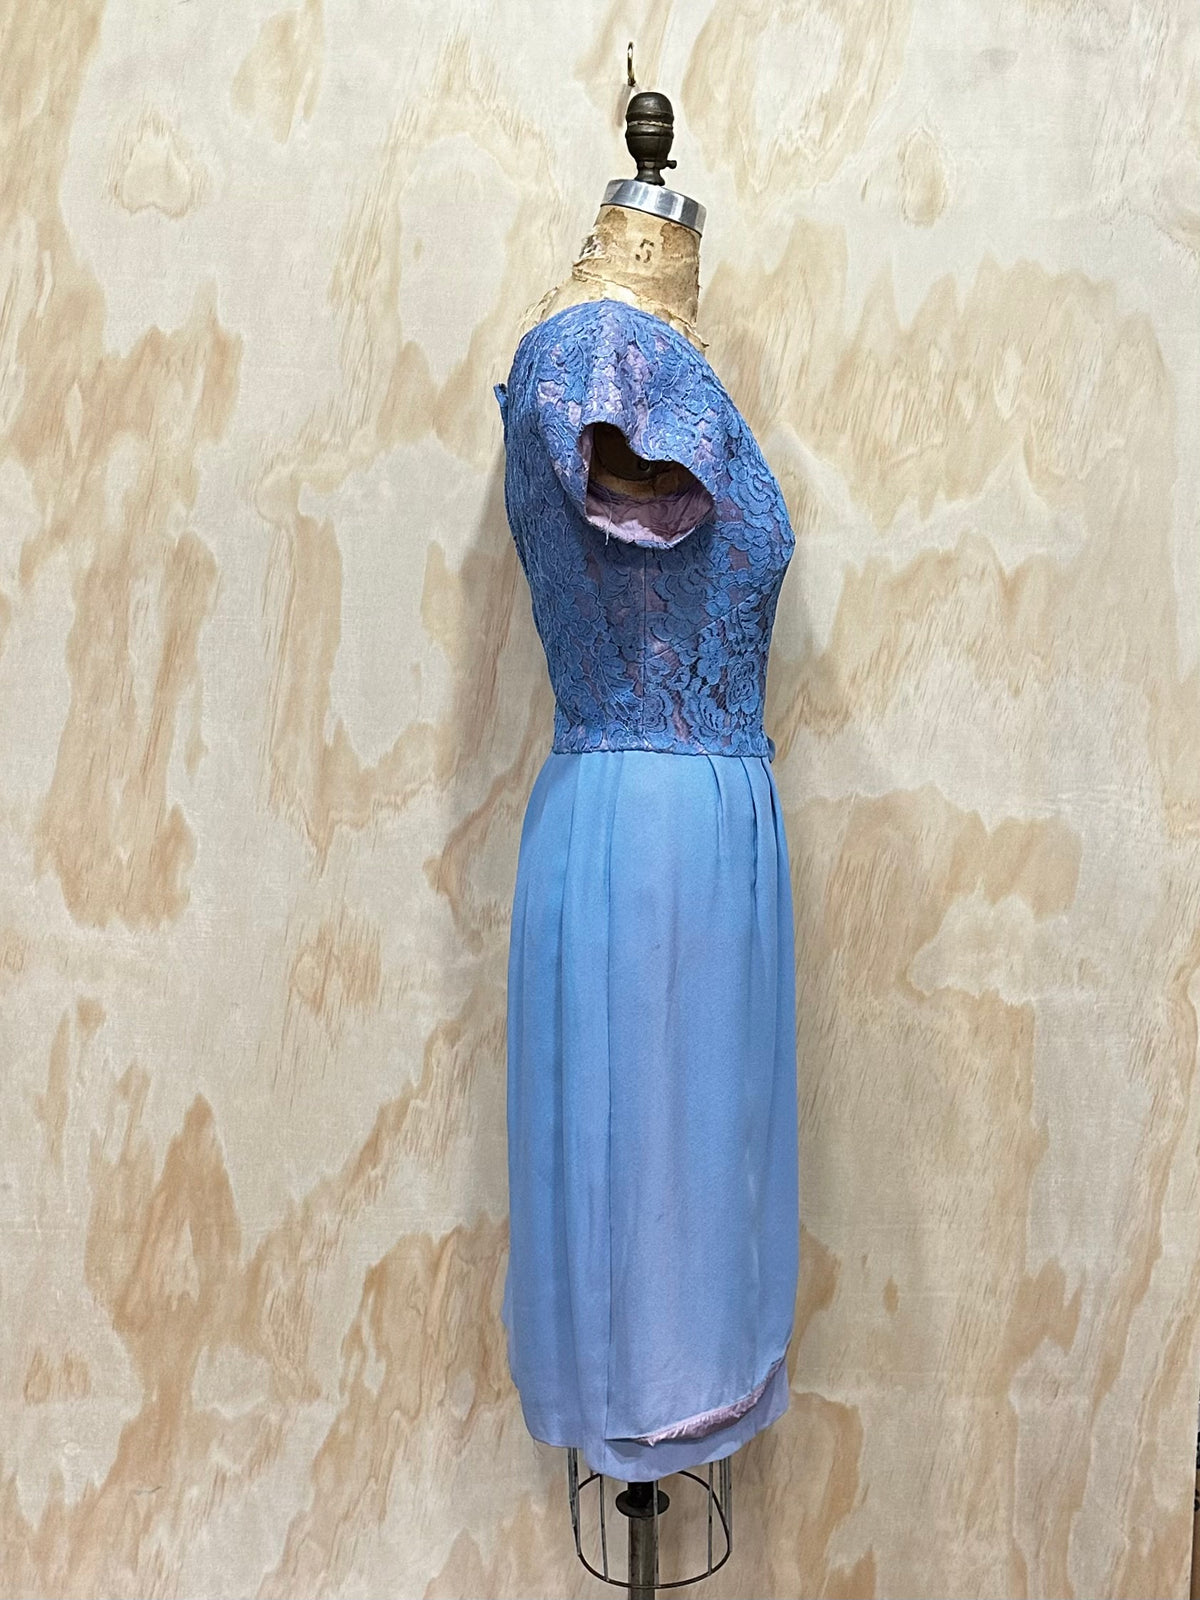 VIntage 1960's Blue Floral Silk Lace Crepe Party Dress